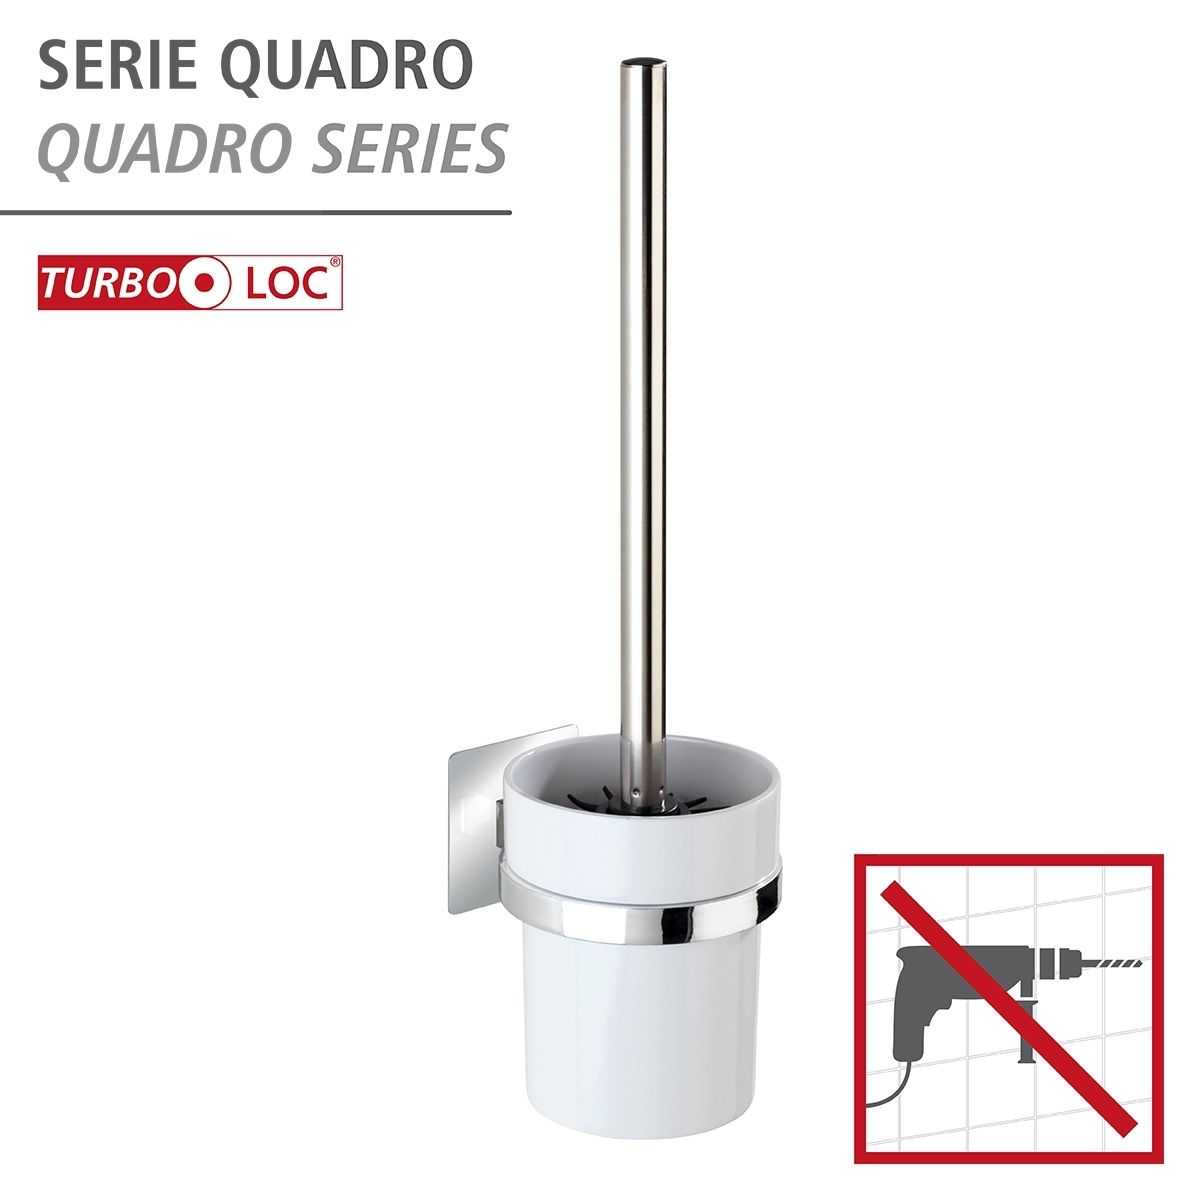 WENKO Turbo-Loc WC-Garnitur Quadro, Spezial-Klebepad für einfache Montage  ohne bohren | WC-Bürsten & Garnituren | Badaccessoires | Bad & Sanitär |  markenbaumarkt24 | Toilettenbürstenhalter